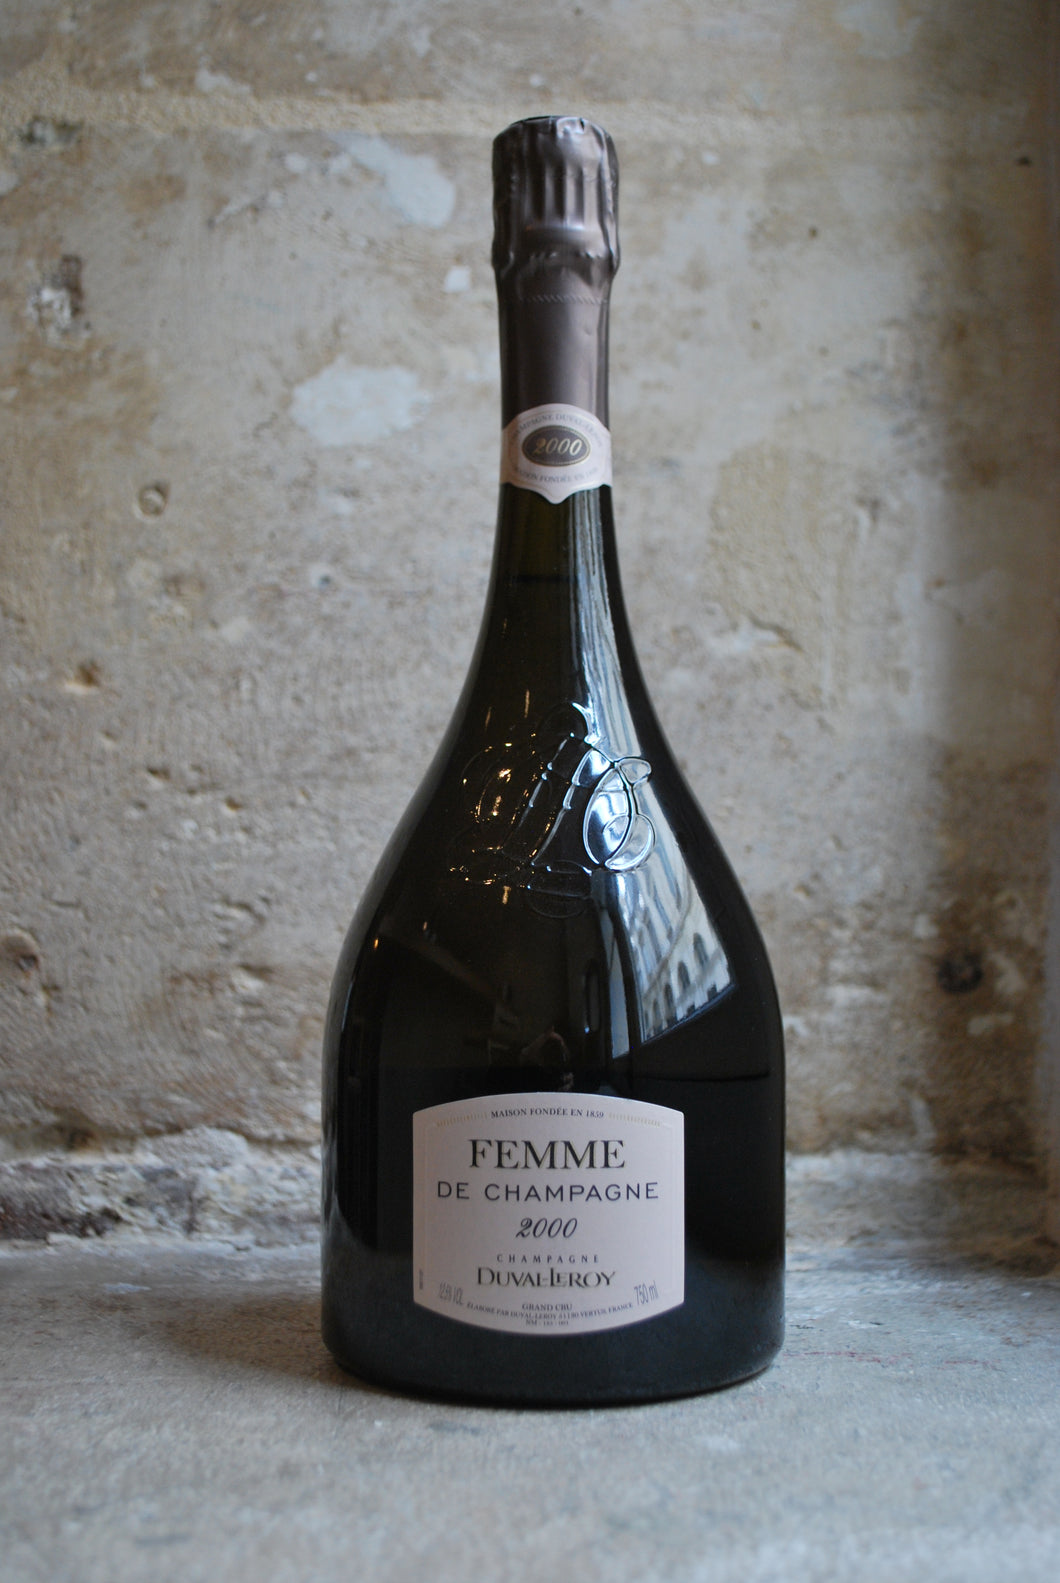 Duval-Leroy Femme de Champagne 2000